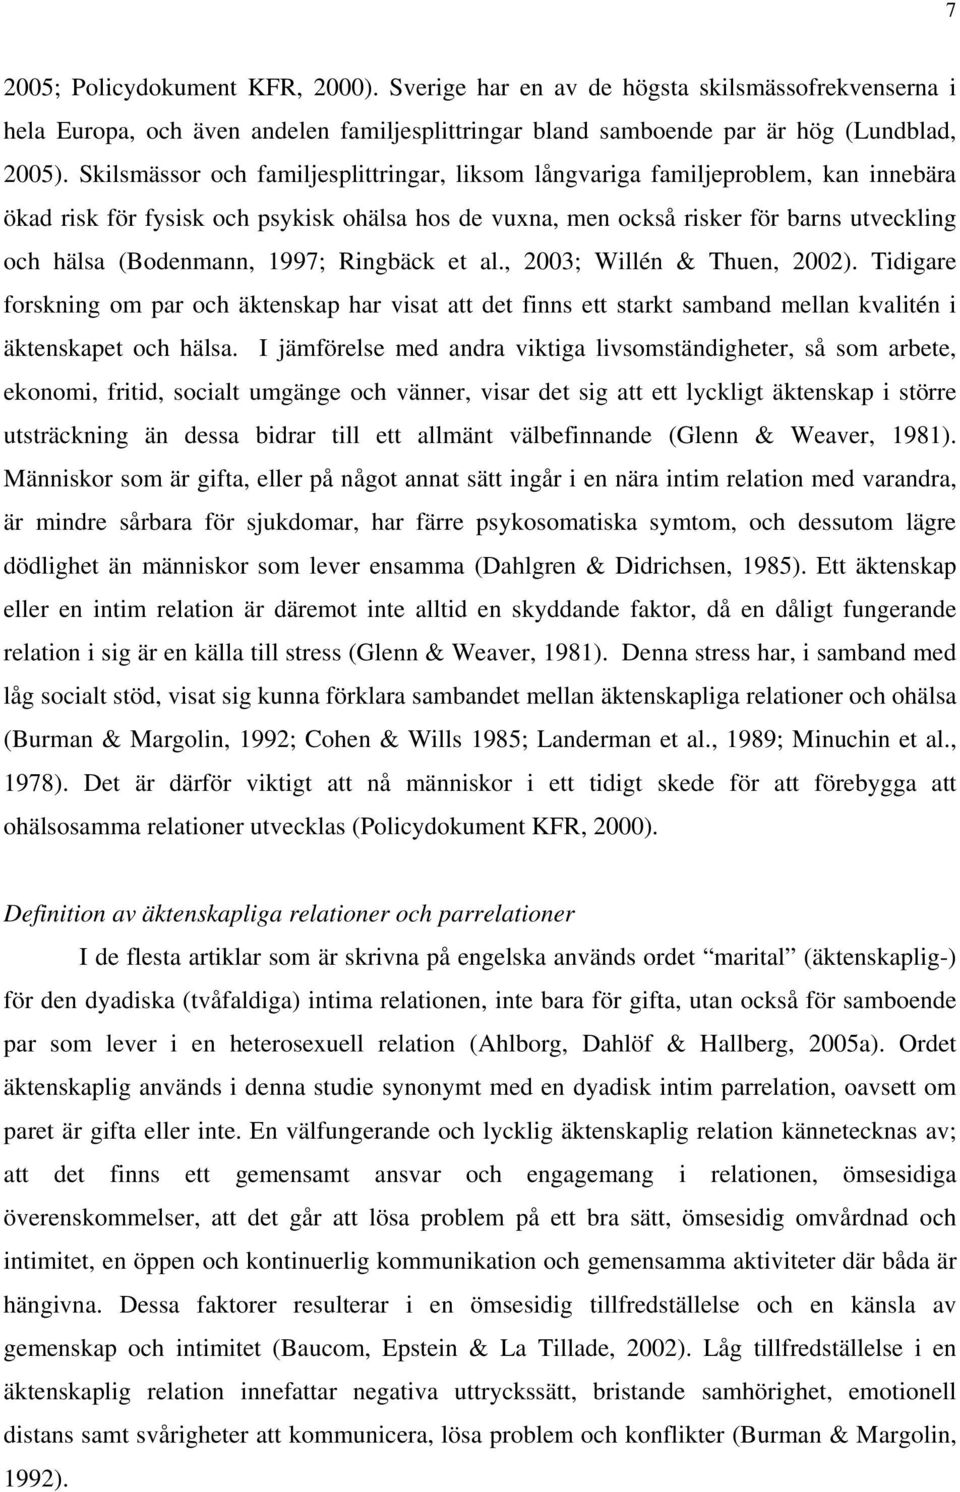 1997; Ringbäck et al., 2003; Willén & Thuen, 2002). Tidigare forskning om par och äktenskap har visat att det finns ett starkt samband mellan kvalitén i äktenskapet och hälsa.